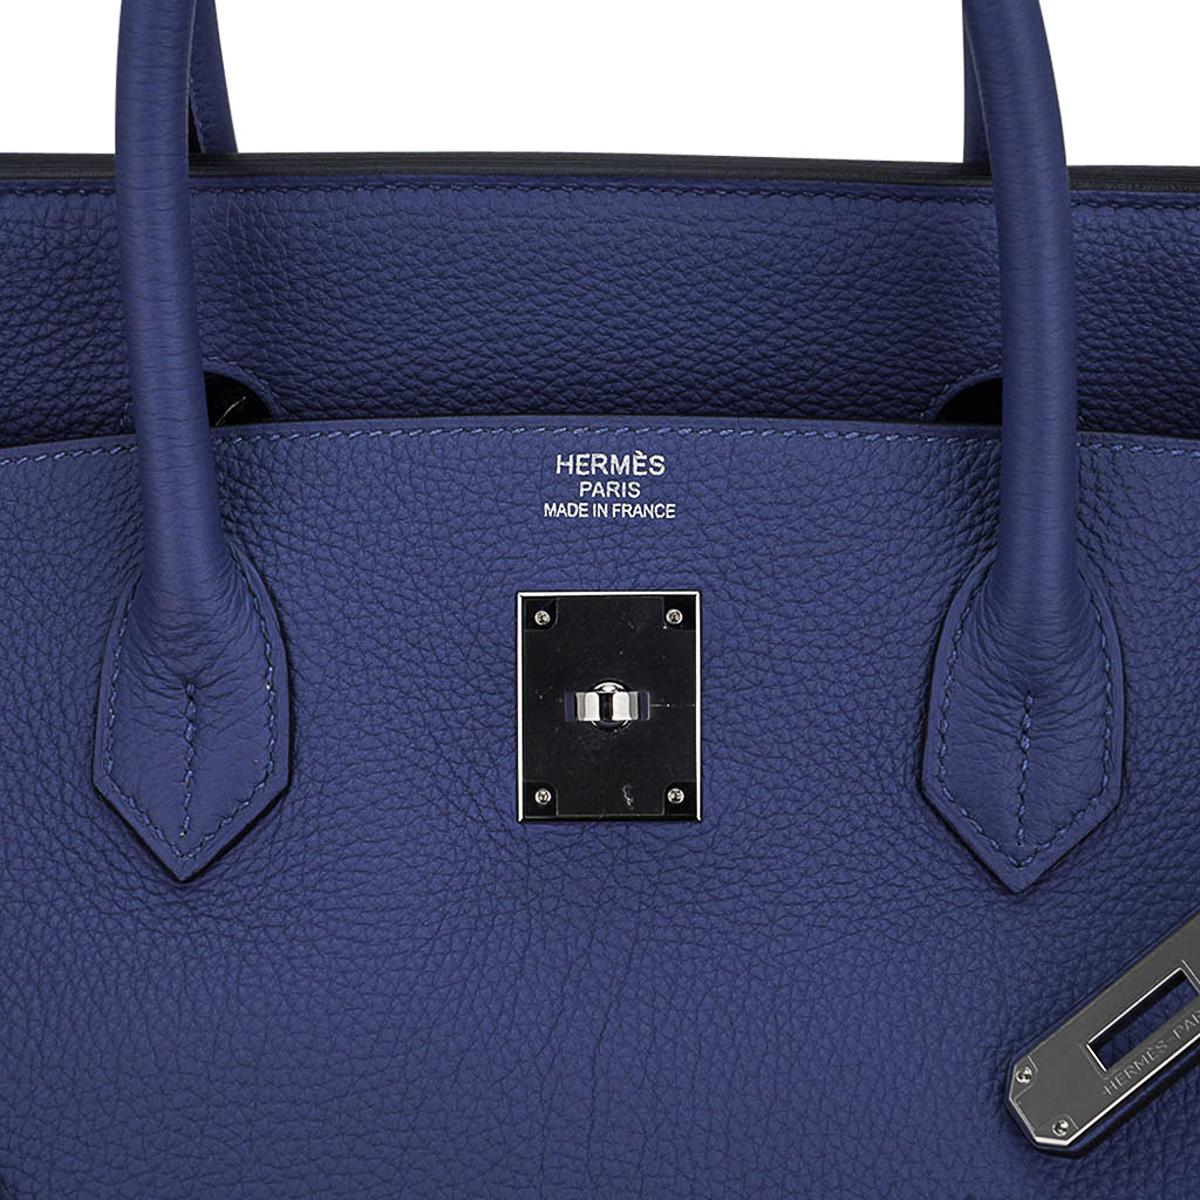 Hermes Birkin 40 Bag Blue de Prusse Palladium Hardware Togo Leather For Sale 3